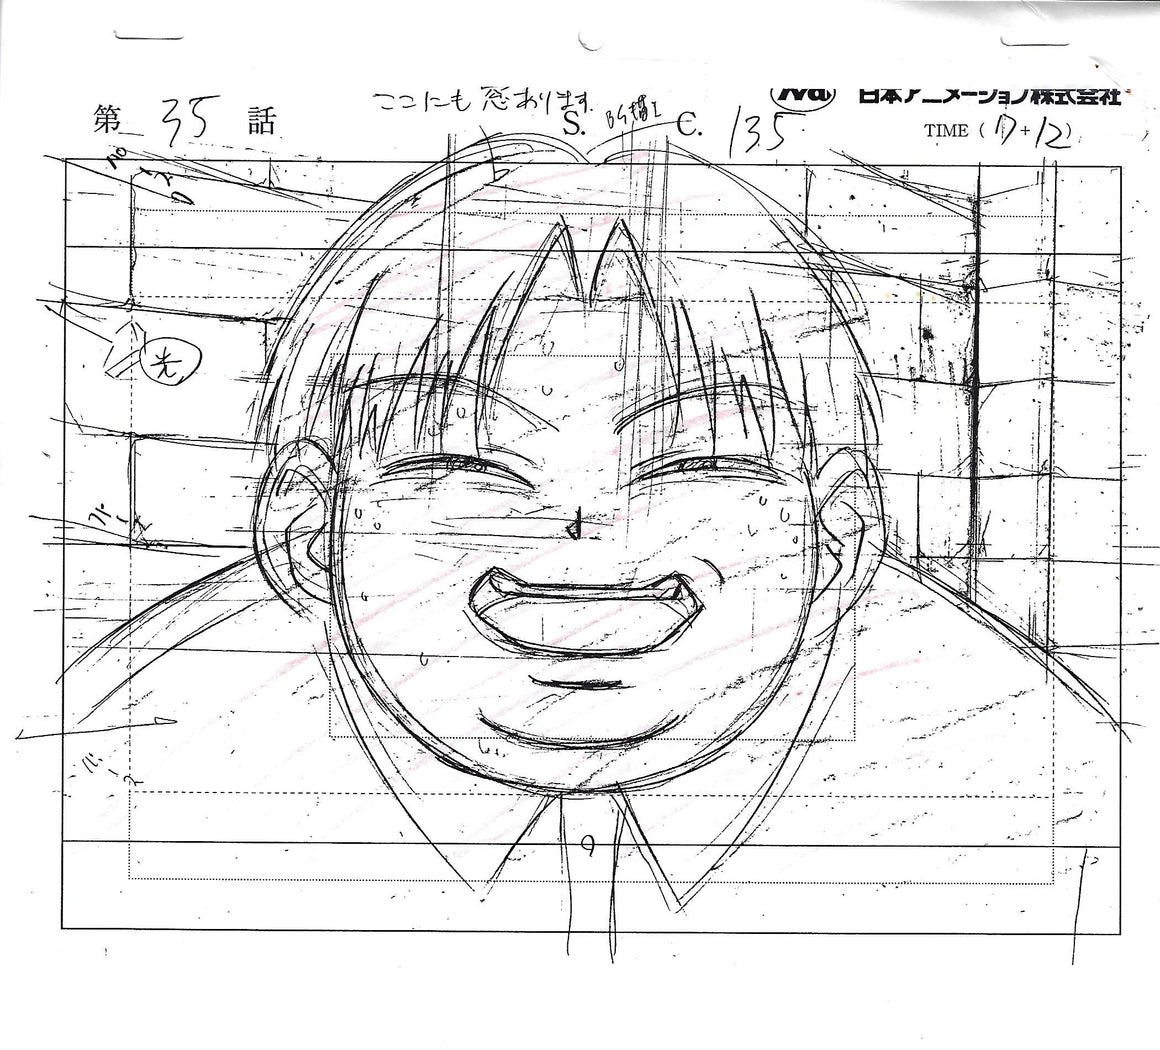 Hunter × Hunter - Milluki talking about his new tiny bomb - Key Master Setup w/ Douga and Concept